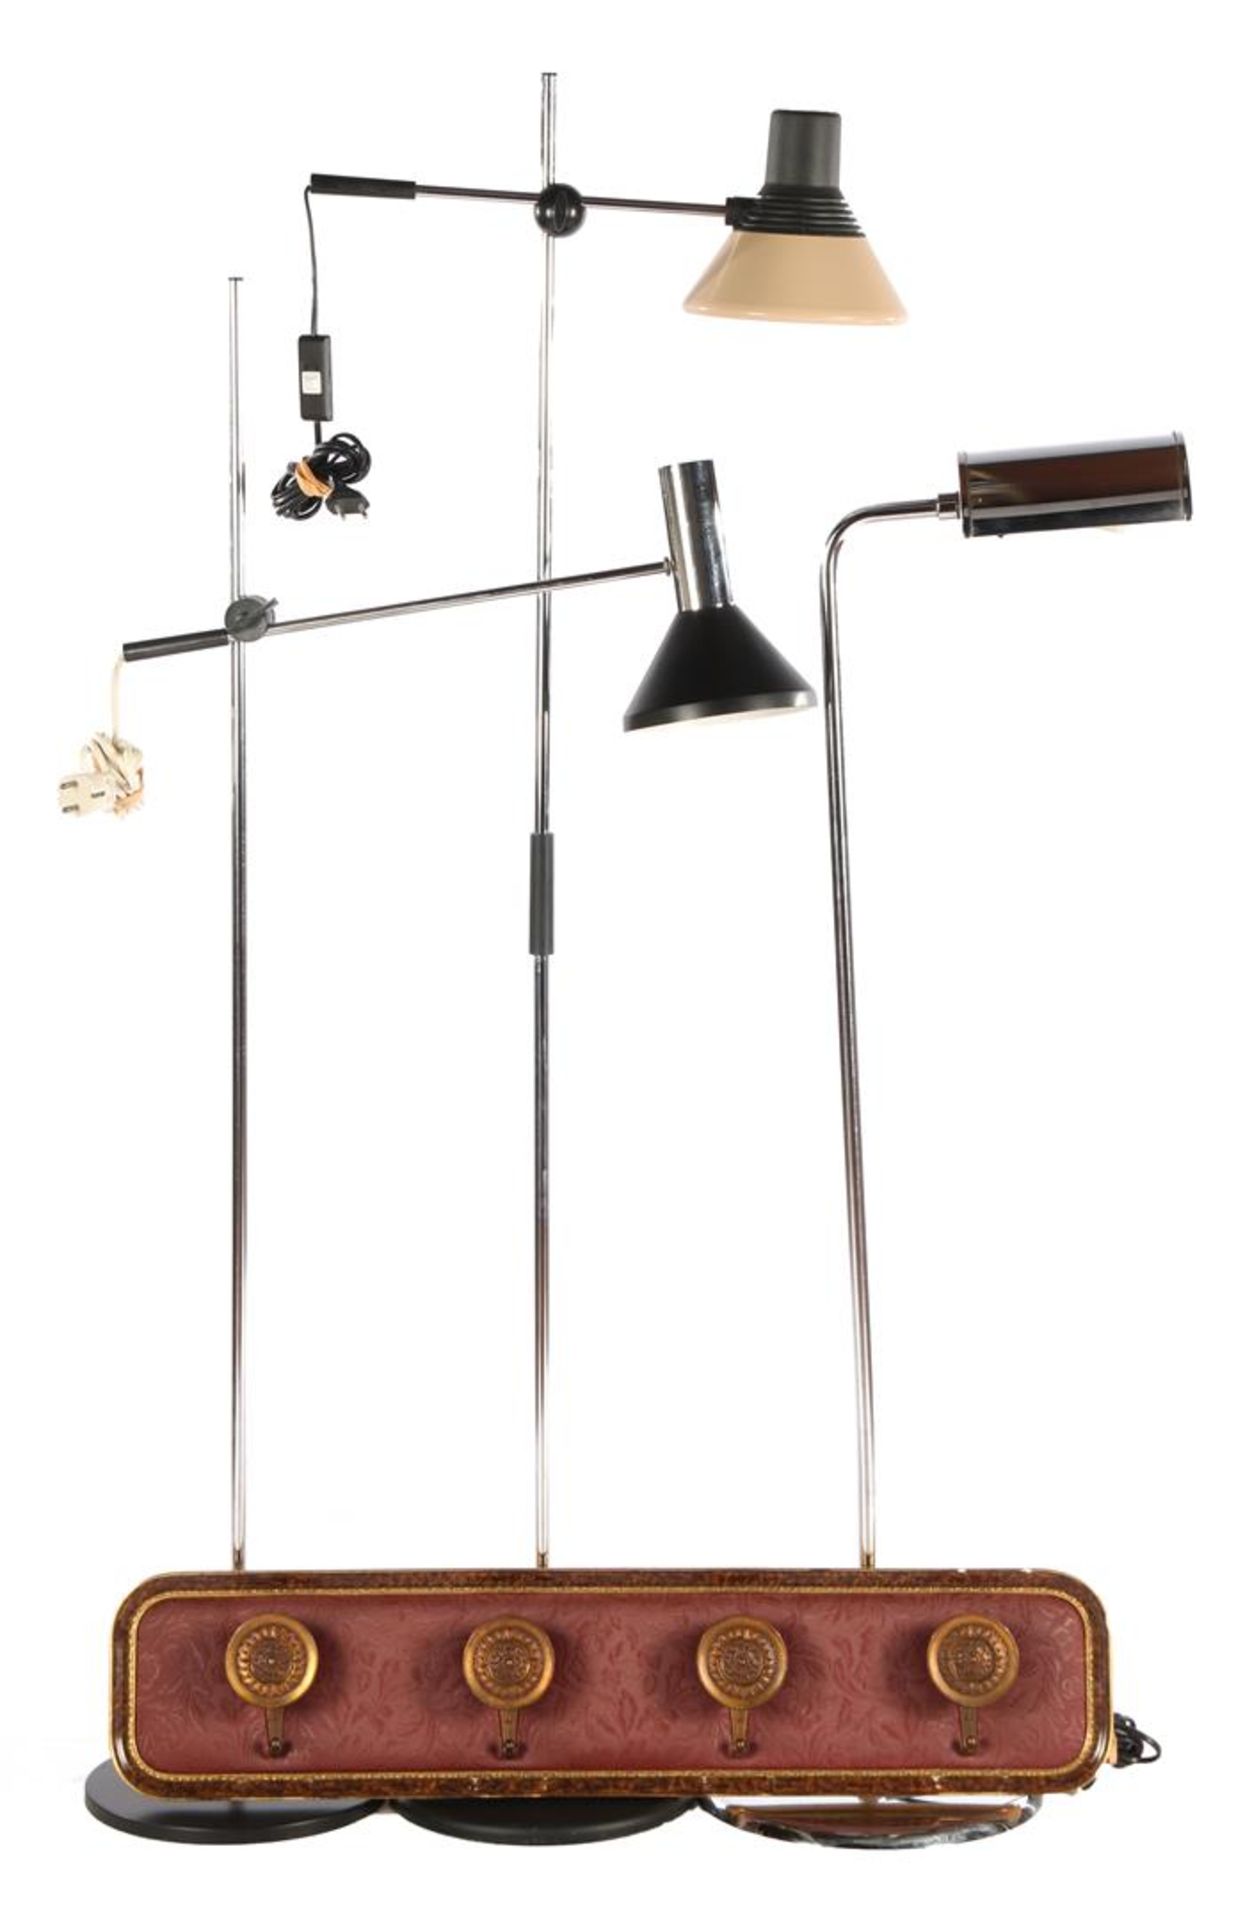 2 metal fishing rod lamps and metal floor lamp, highest 143 cm, and Pieterman Schiedam coat rack